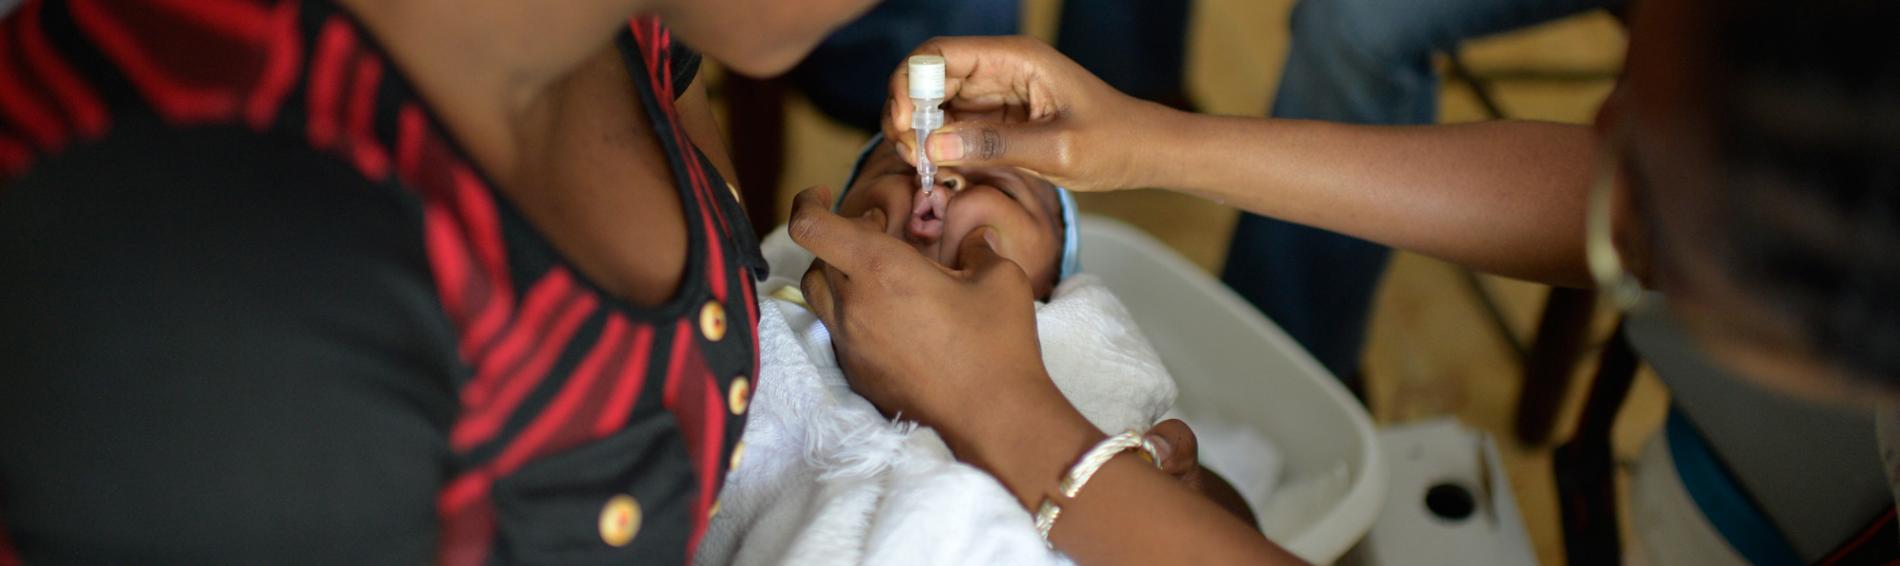 Ärzte der Welt setzt sich für eine kostenlofreie Gesundheitsversorgung für schwangere Frauen und Kinder unter fünf Jahren ein. Foto: Benoît Guenot